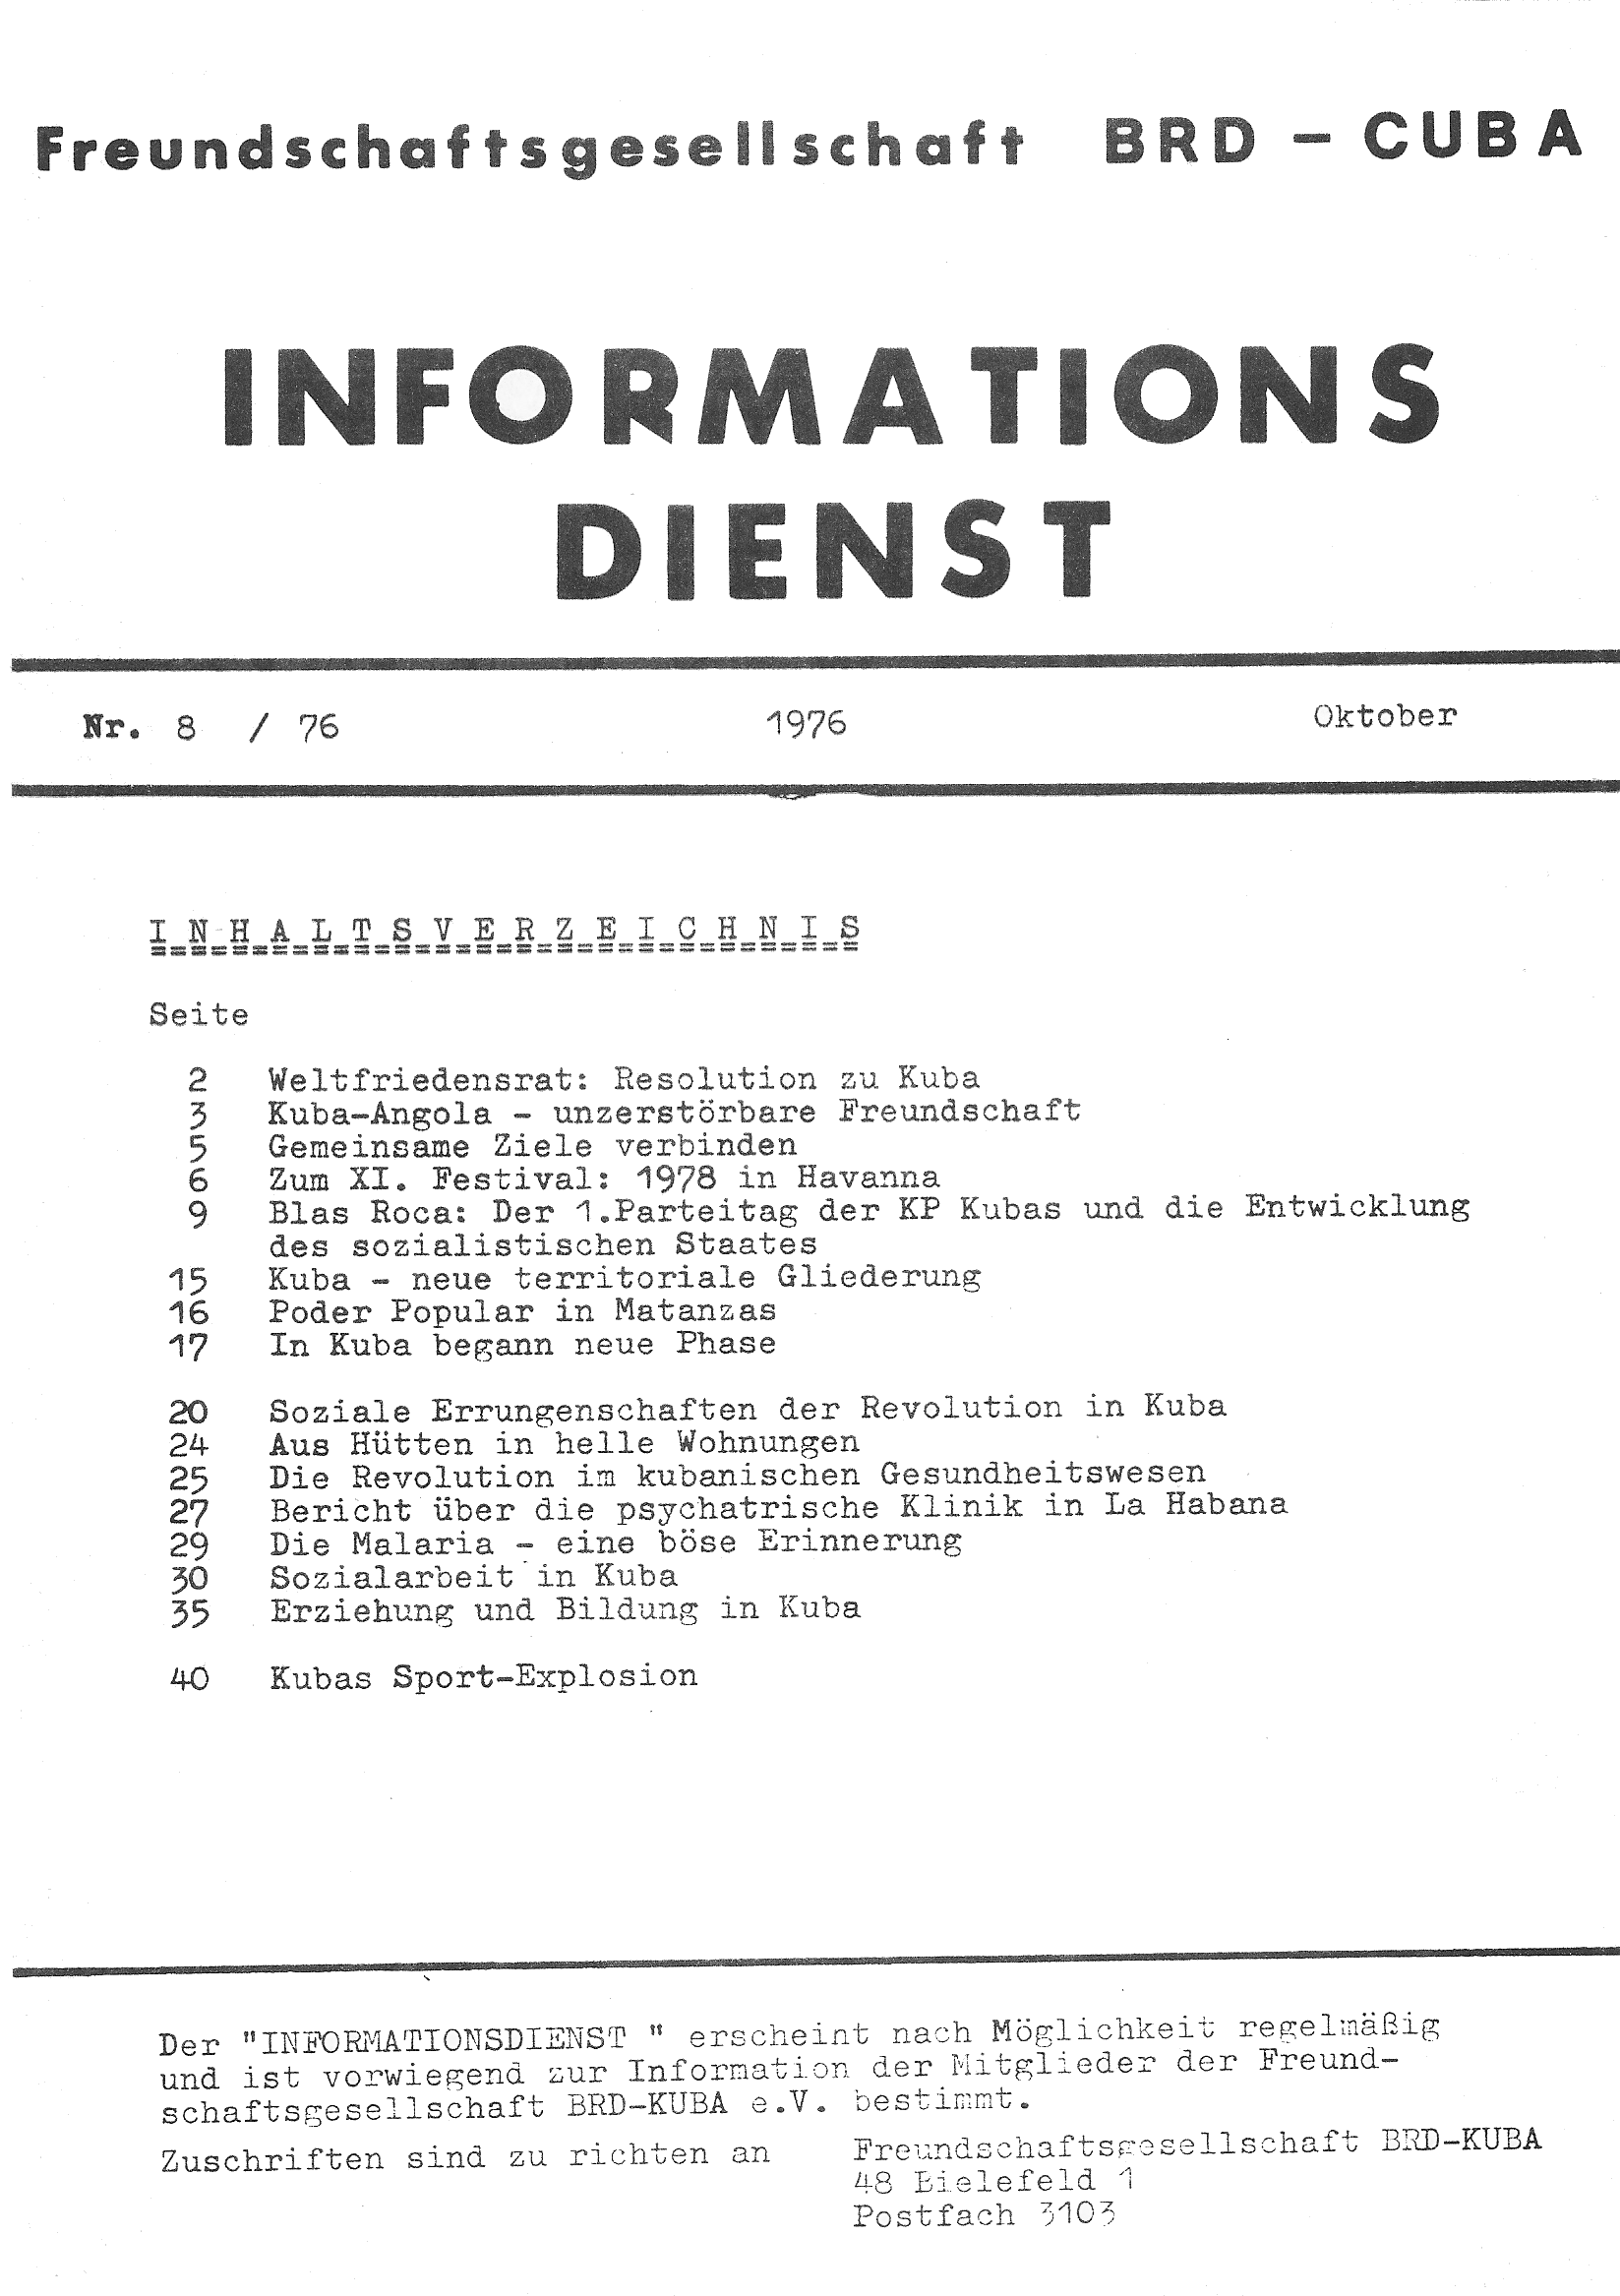 Freundschaftsgesellschaft BRD-Cuba - Informationsdienst Nr. 8 / 1976